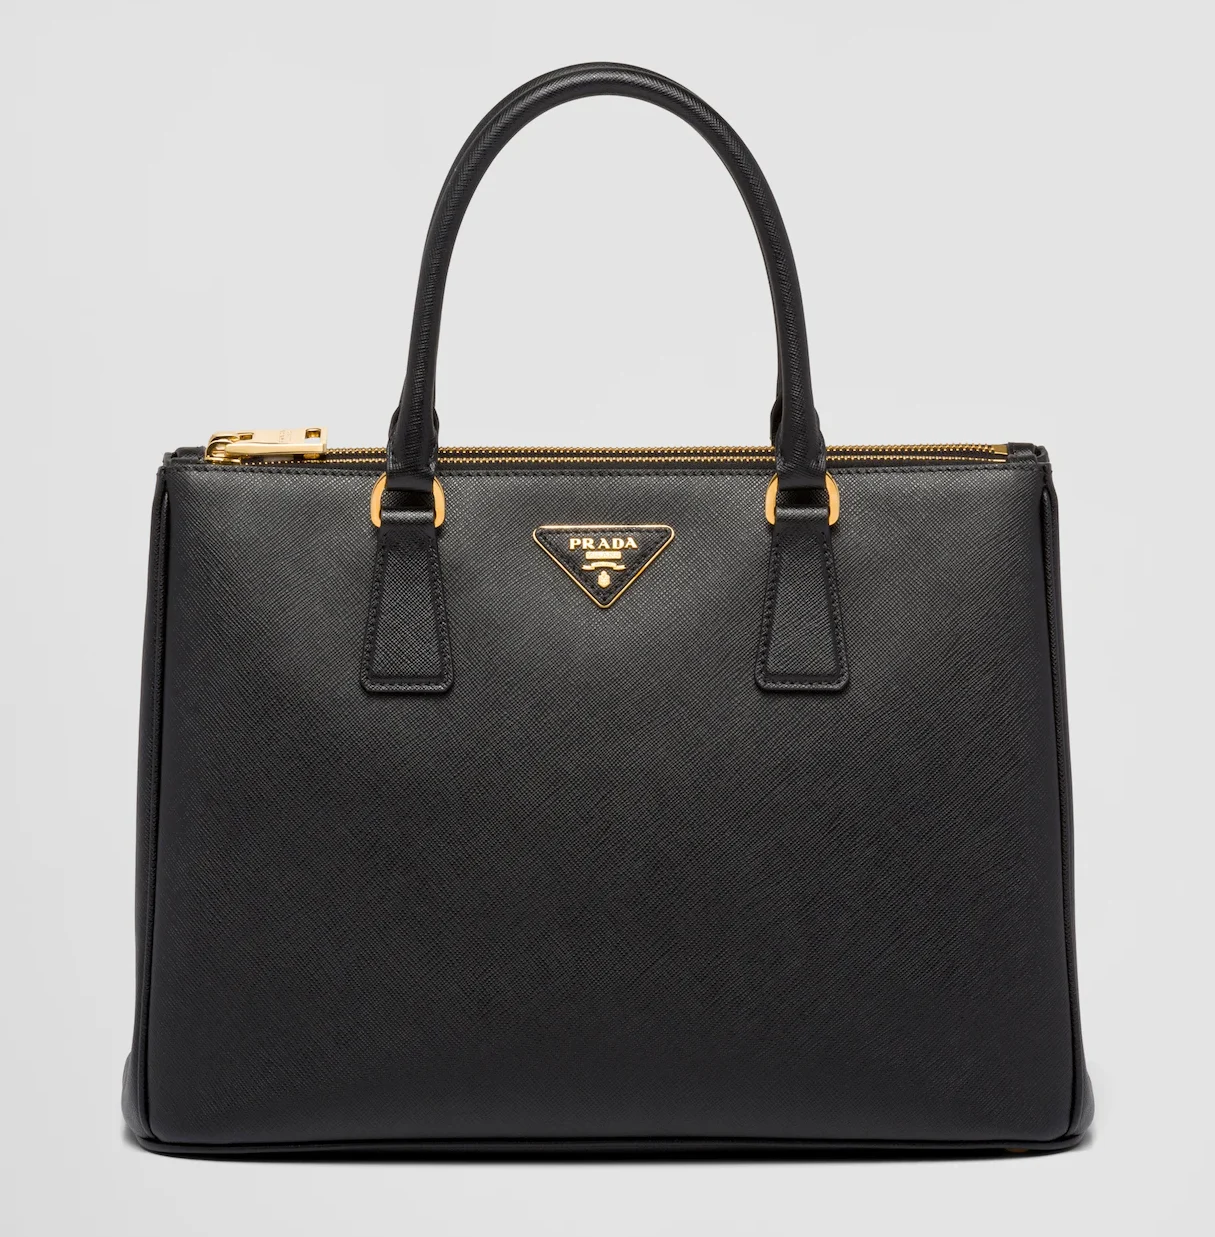 The best designer bags for laptops: Prada Galleria Large Saffiano Tote Bag